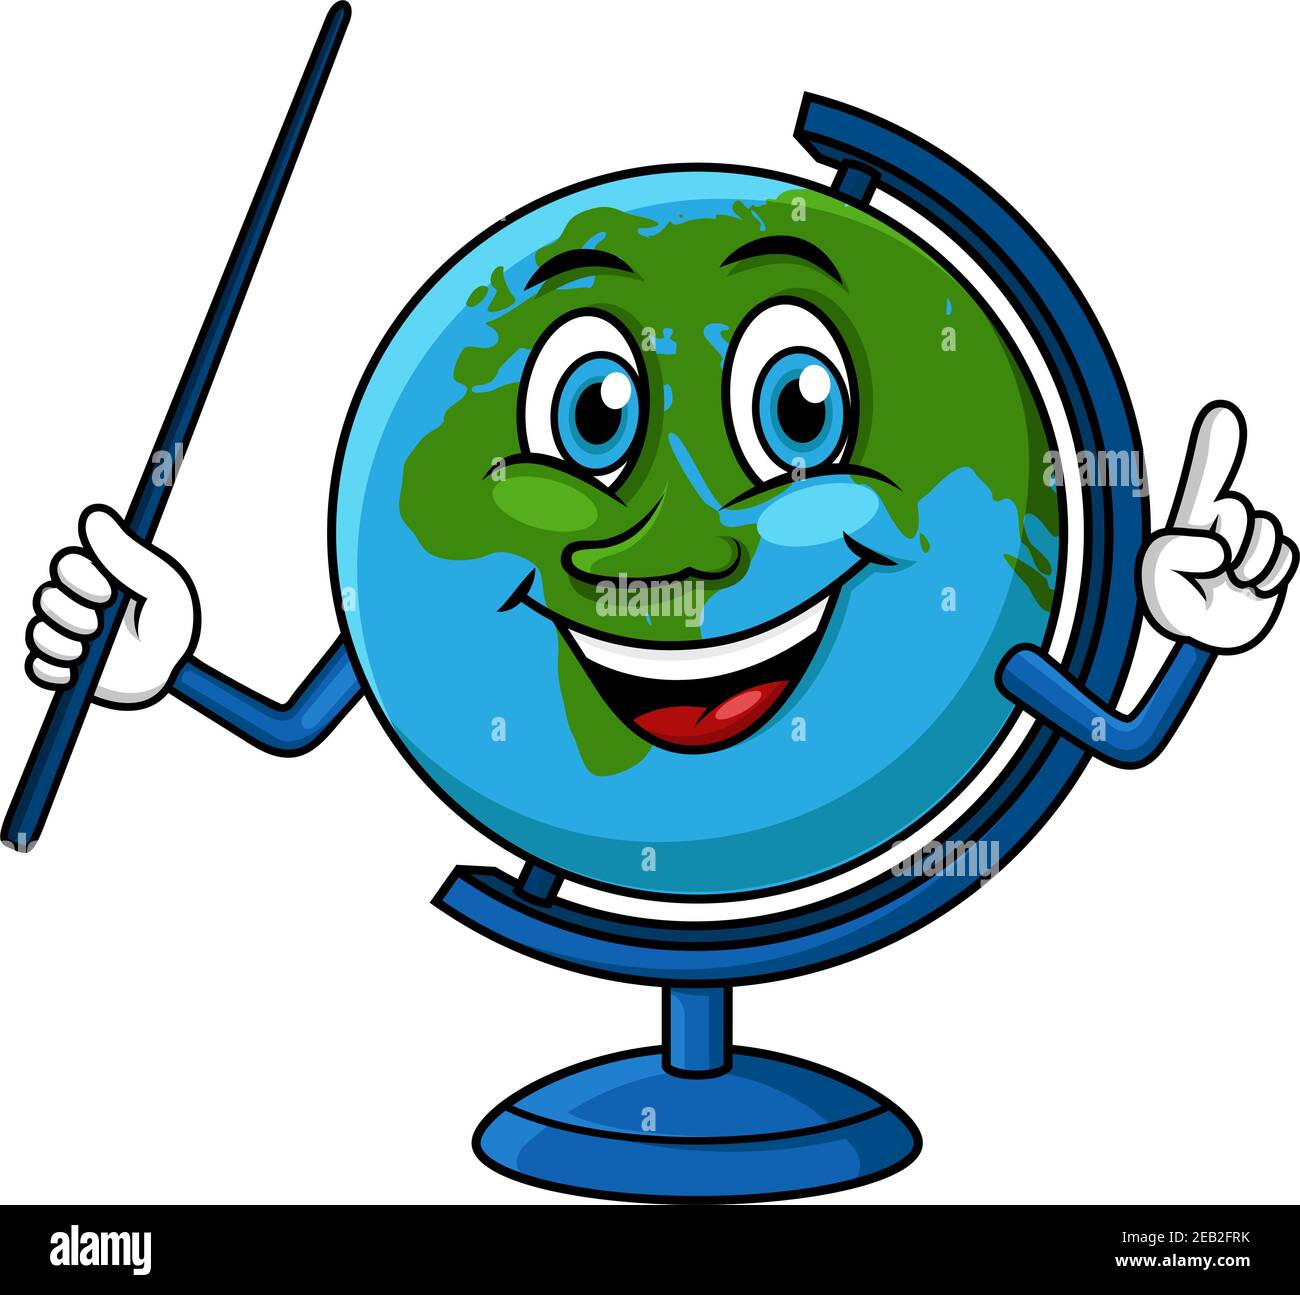 Lächelnder Globus Cartoon-Figur mit blauem Zeiger in der Hand, für Bildung  oder Geographie Unterricht Design Stock-Vektorgrafik - Alamy